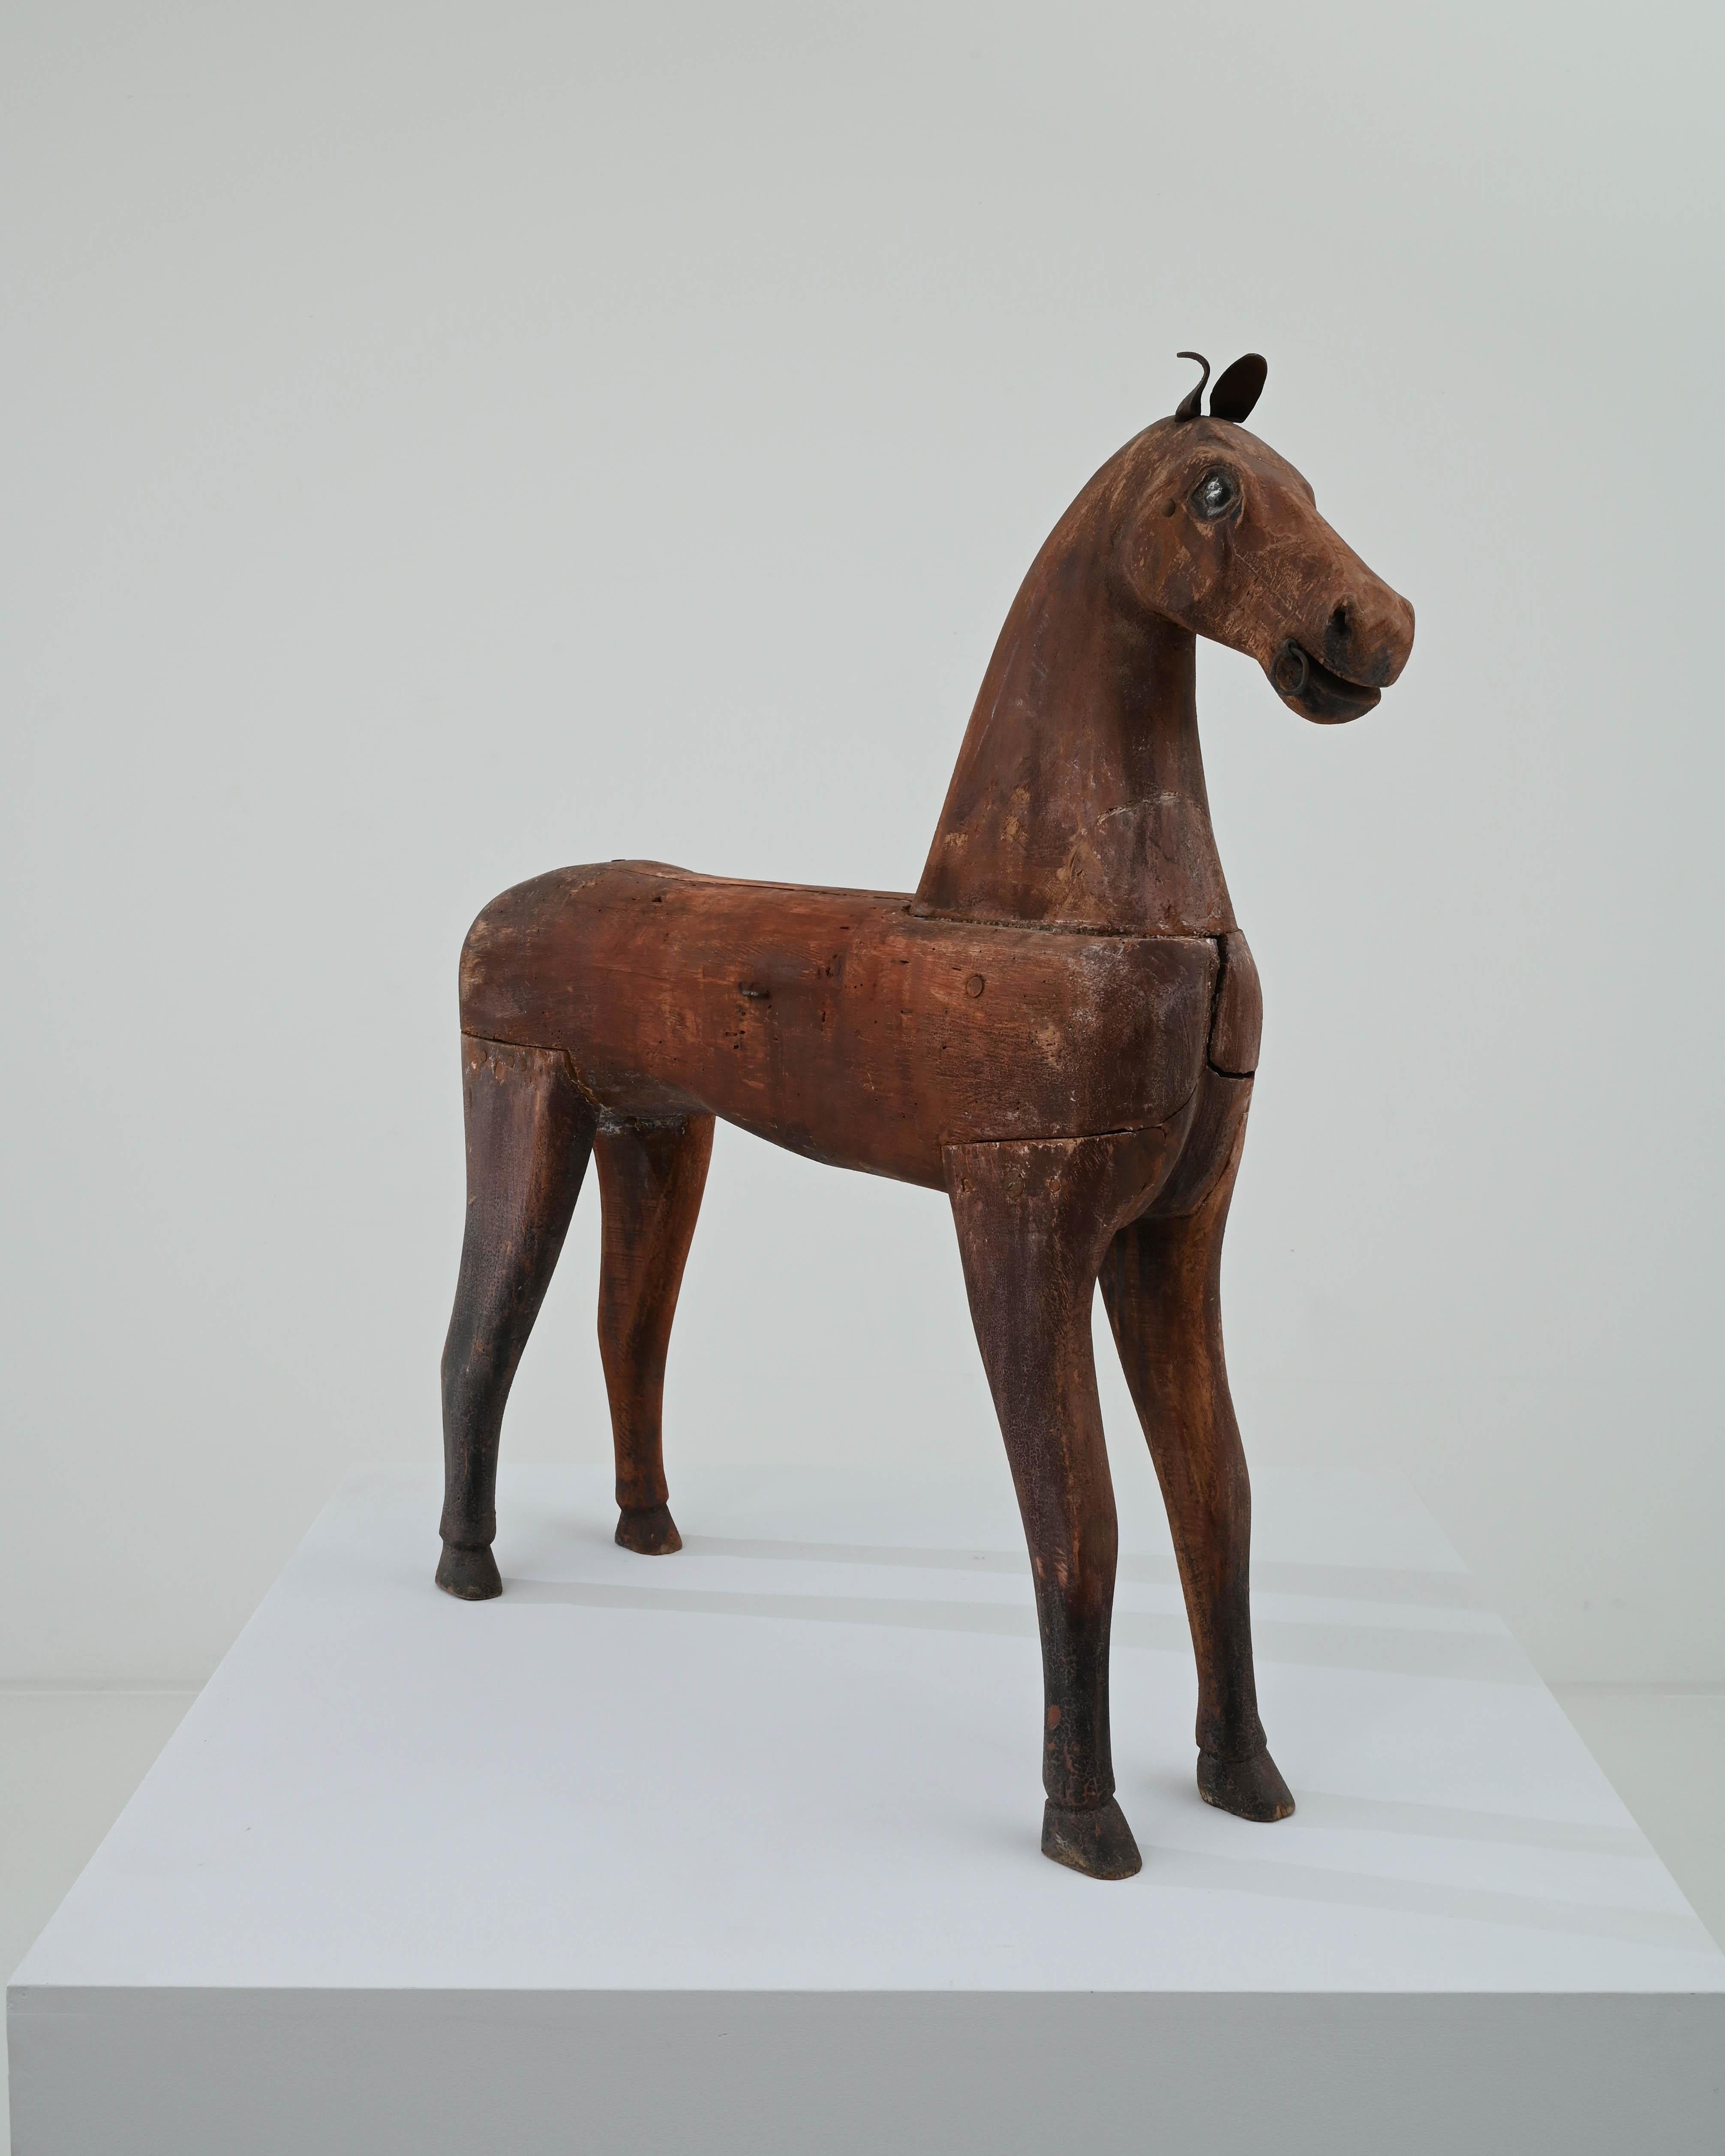 Rustic 20th Century Scandinavian Wooden Horse